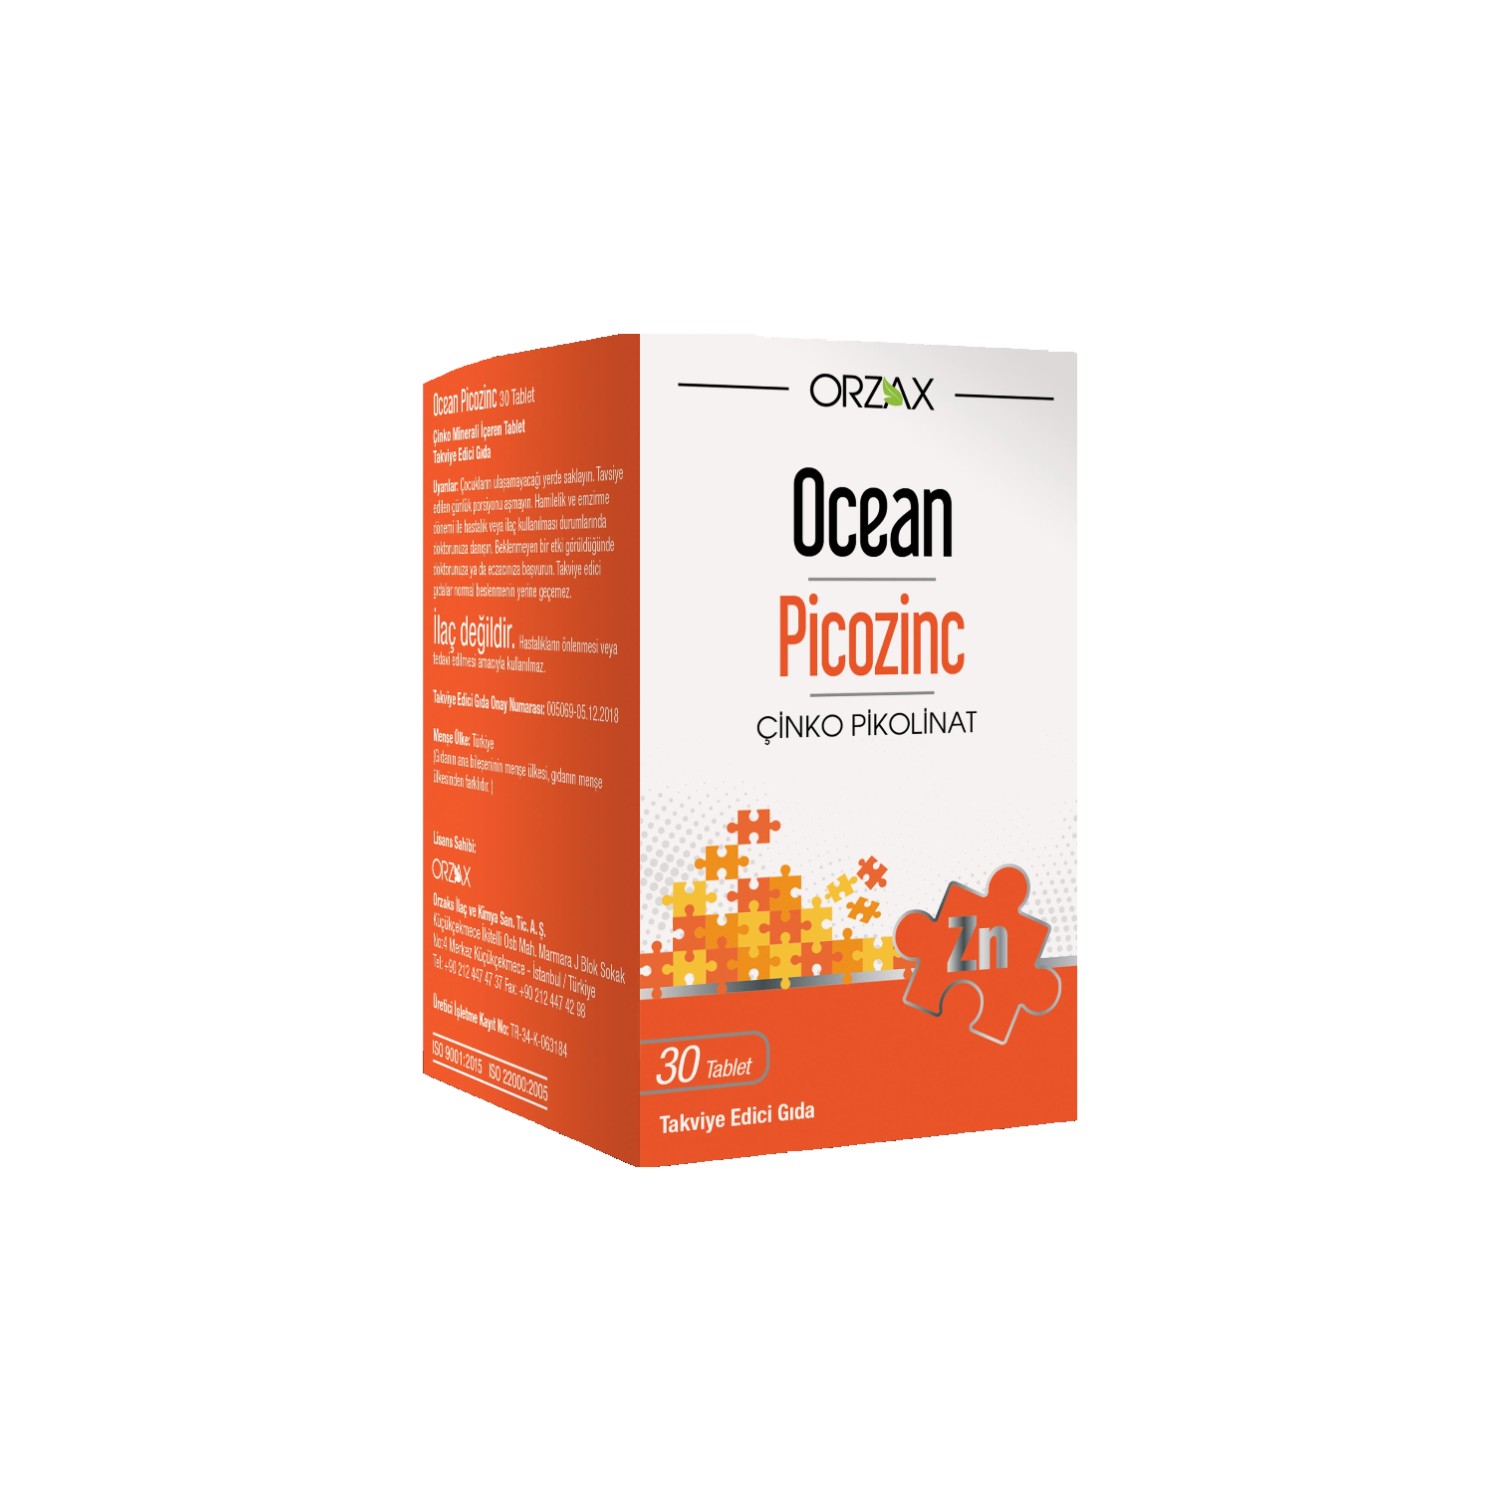 пищевая добавка ocean picozinc cinko picolinate 30 таблеток Пищевая добавка Orzax Ocean Picozinc Supplementary Food, 4 упаковки по 30 капсул